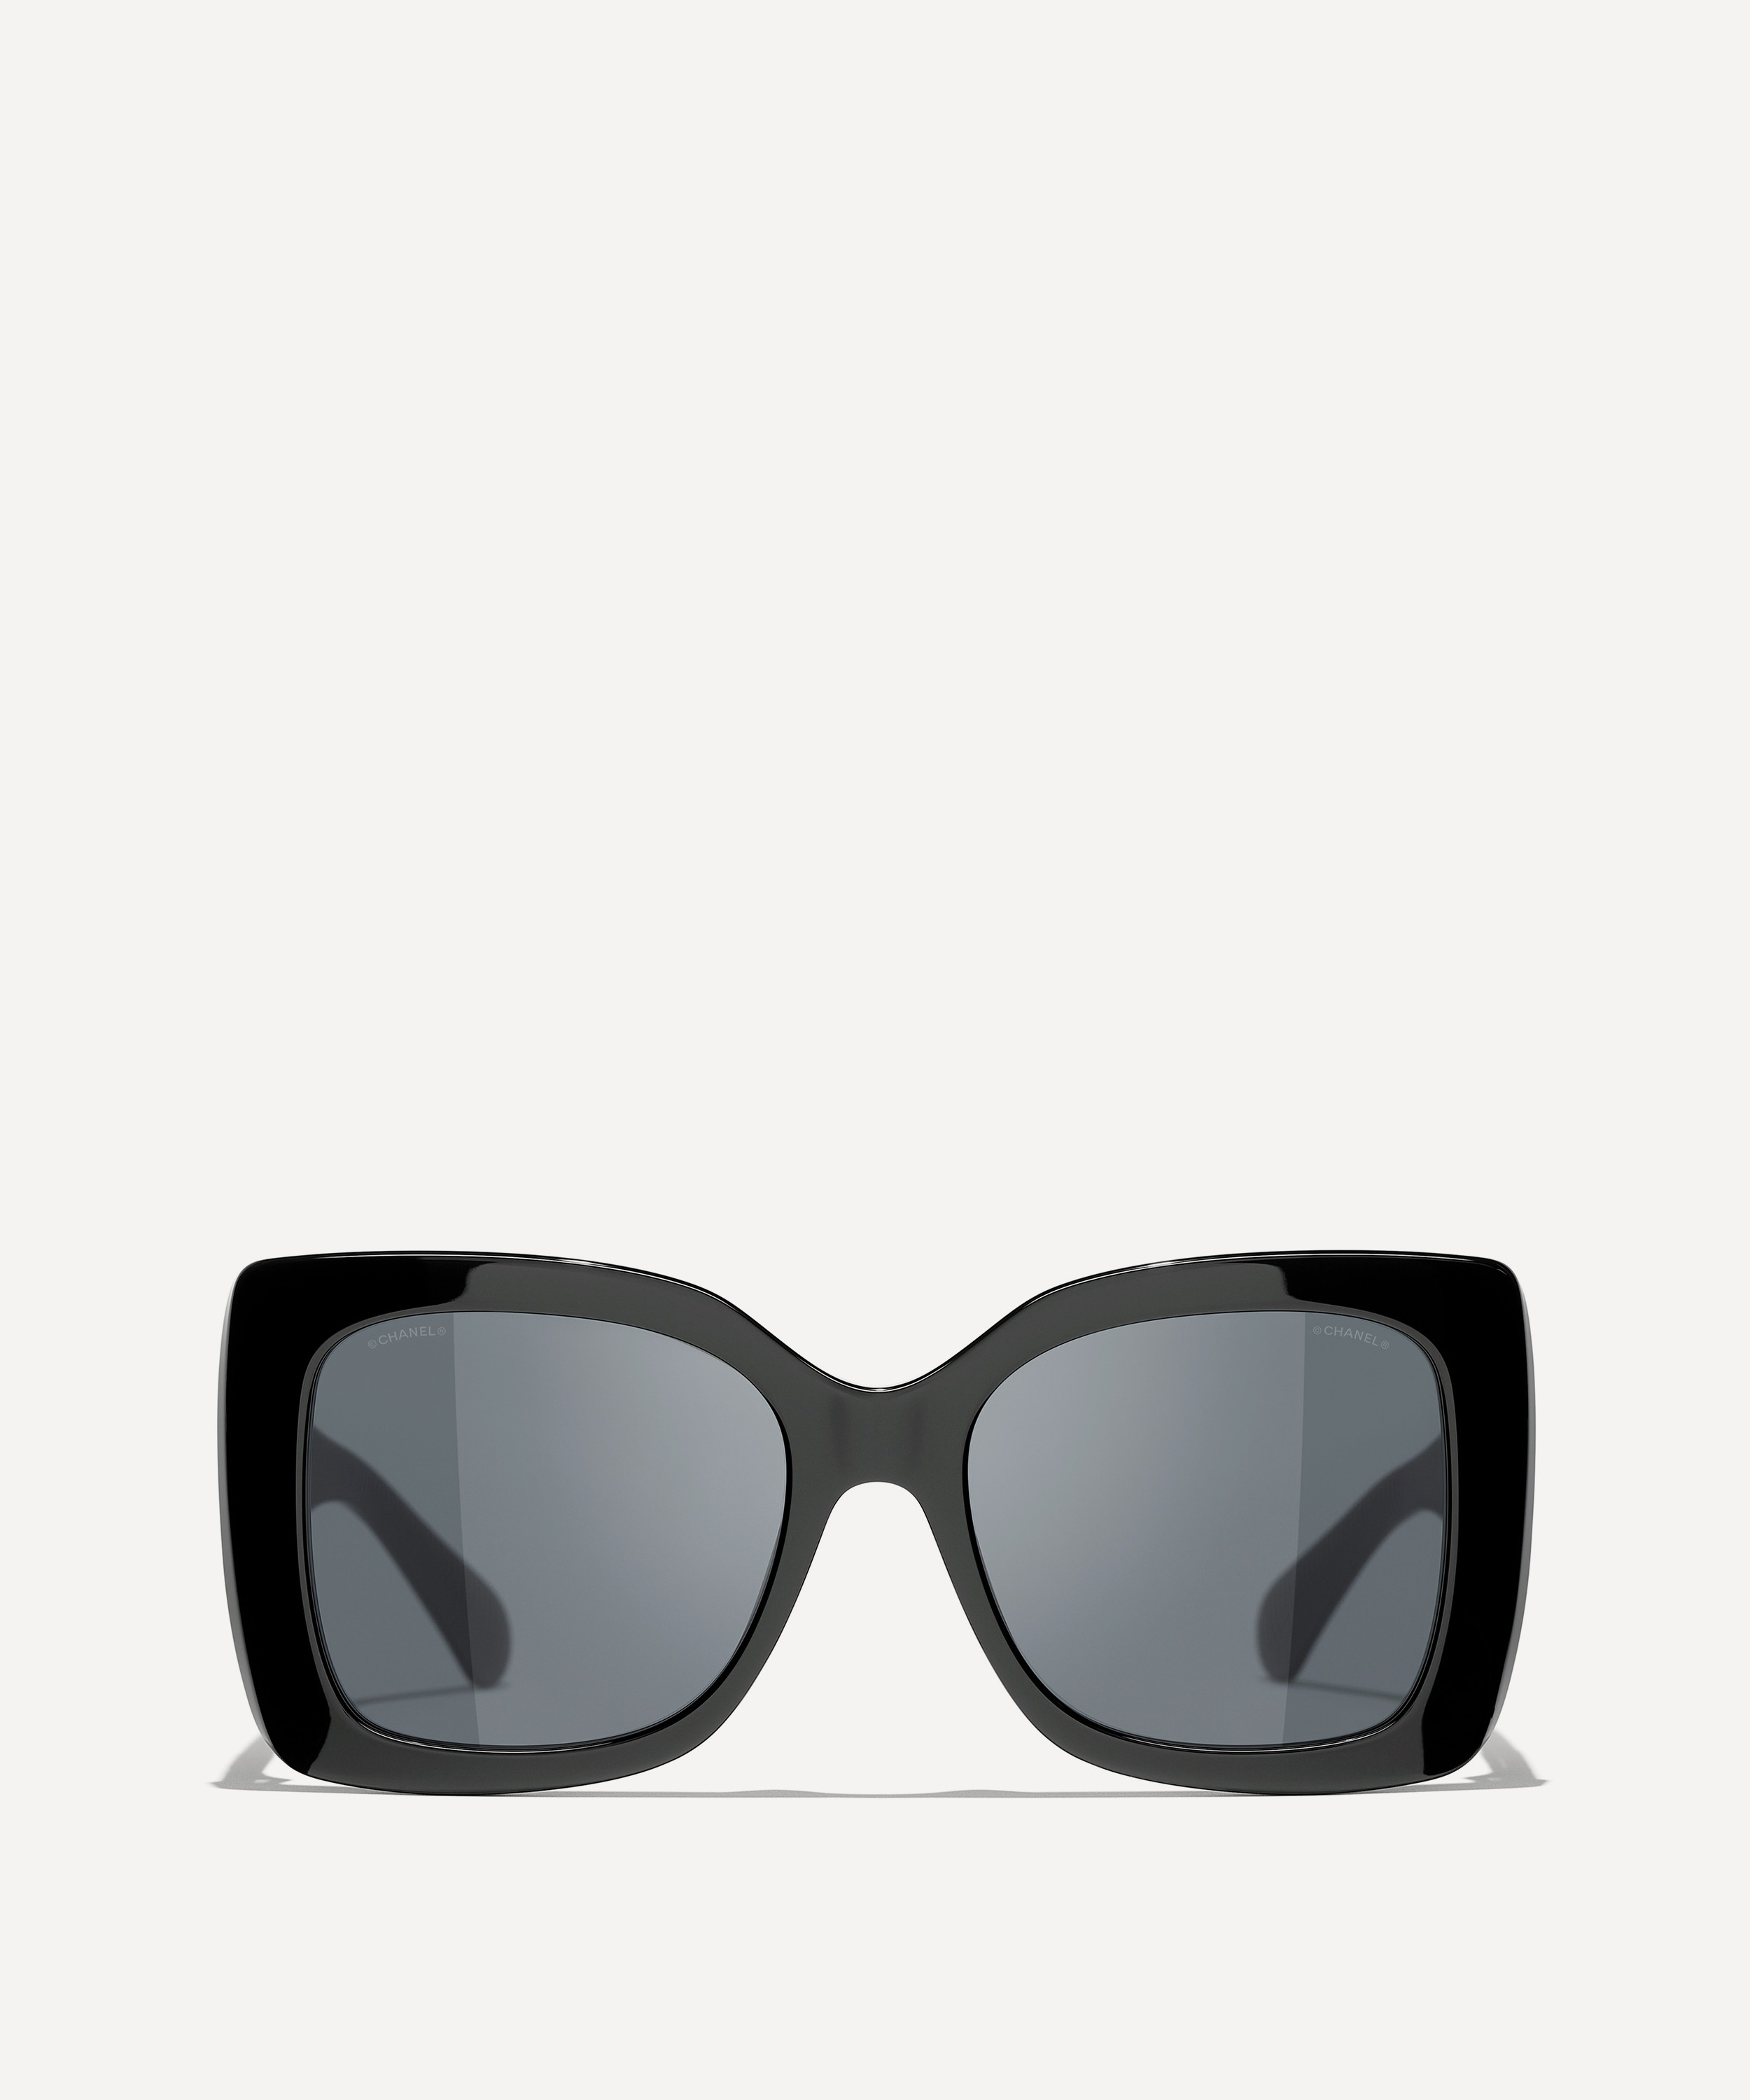 Chanel Square Sunglasses |